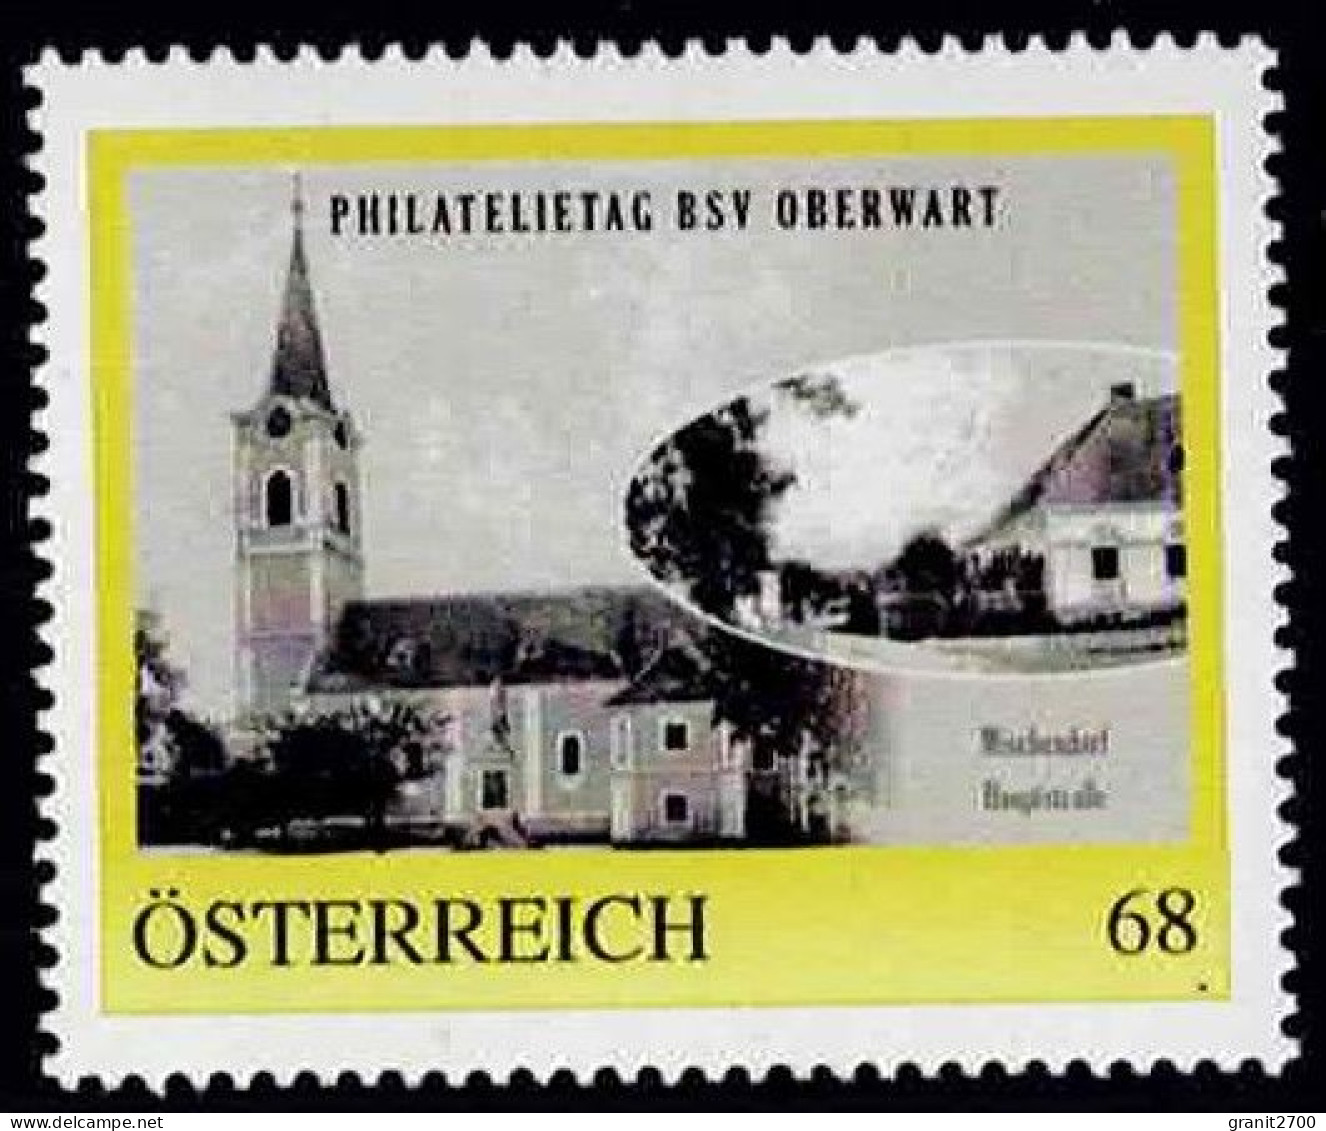 PM  Philatelietag  Oberwart - Mischendorf   Ex Bogen Nr. 8122728 Vom 18.6.2017  Postfrisch - Timbres Personnalisés